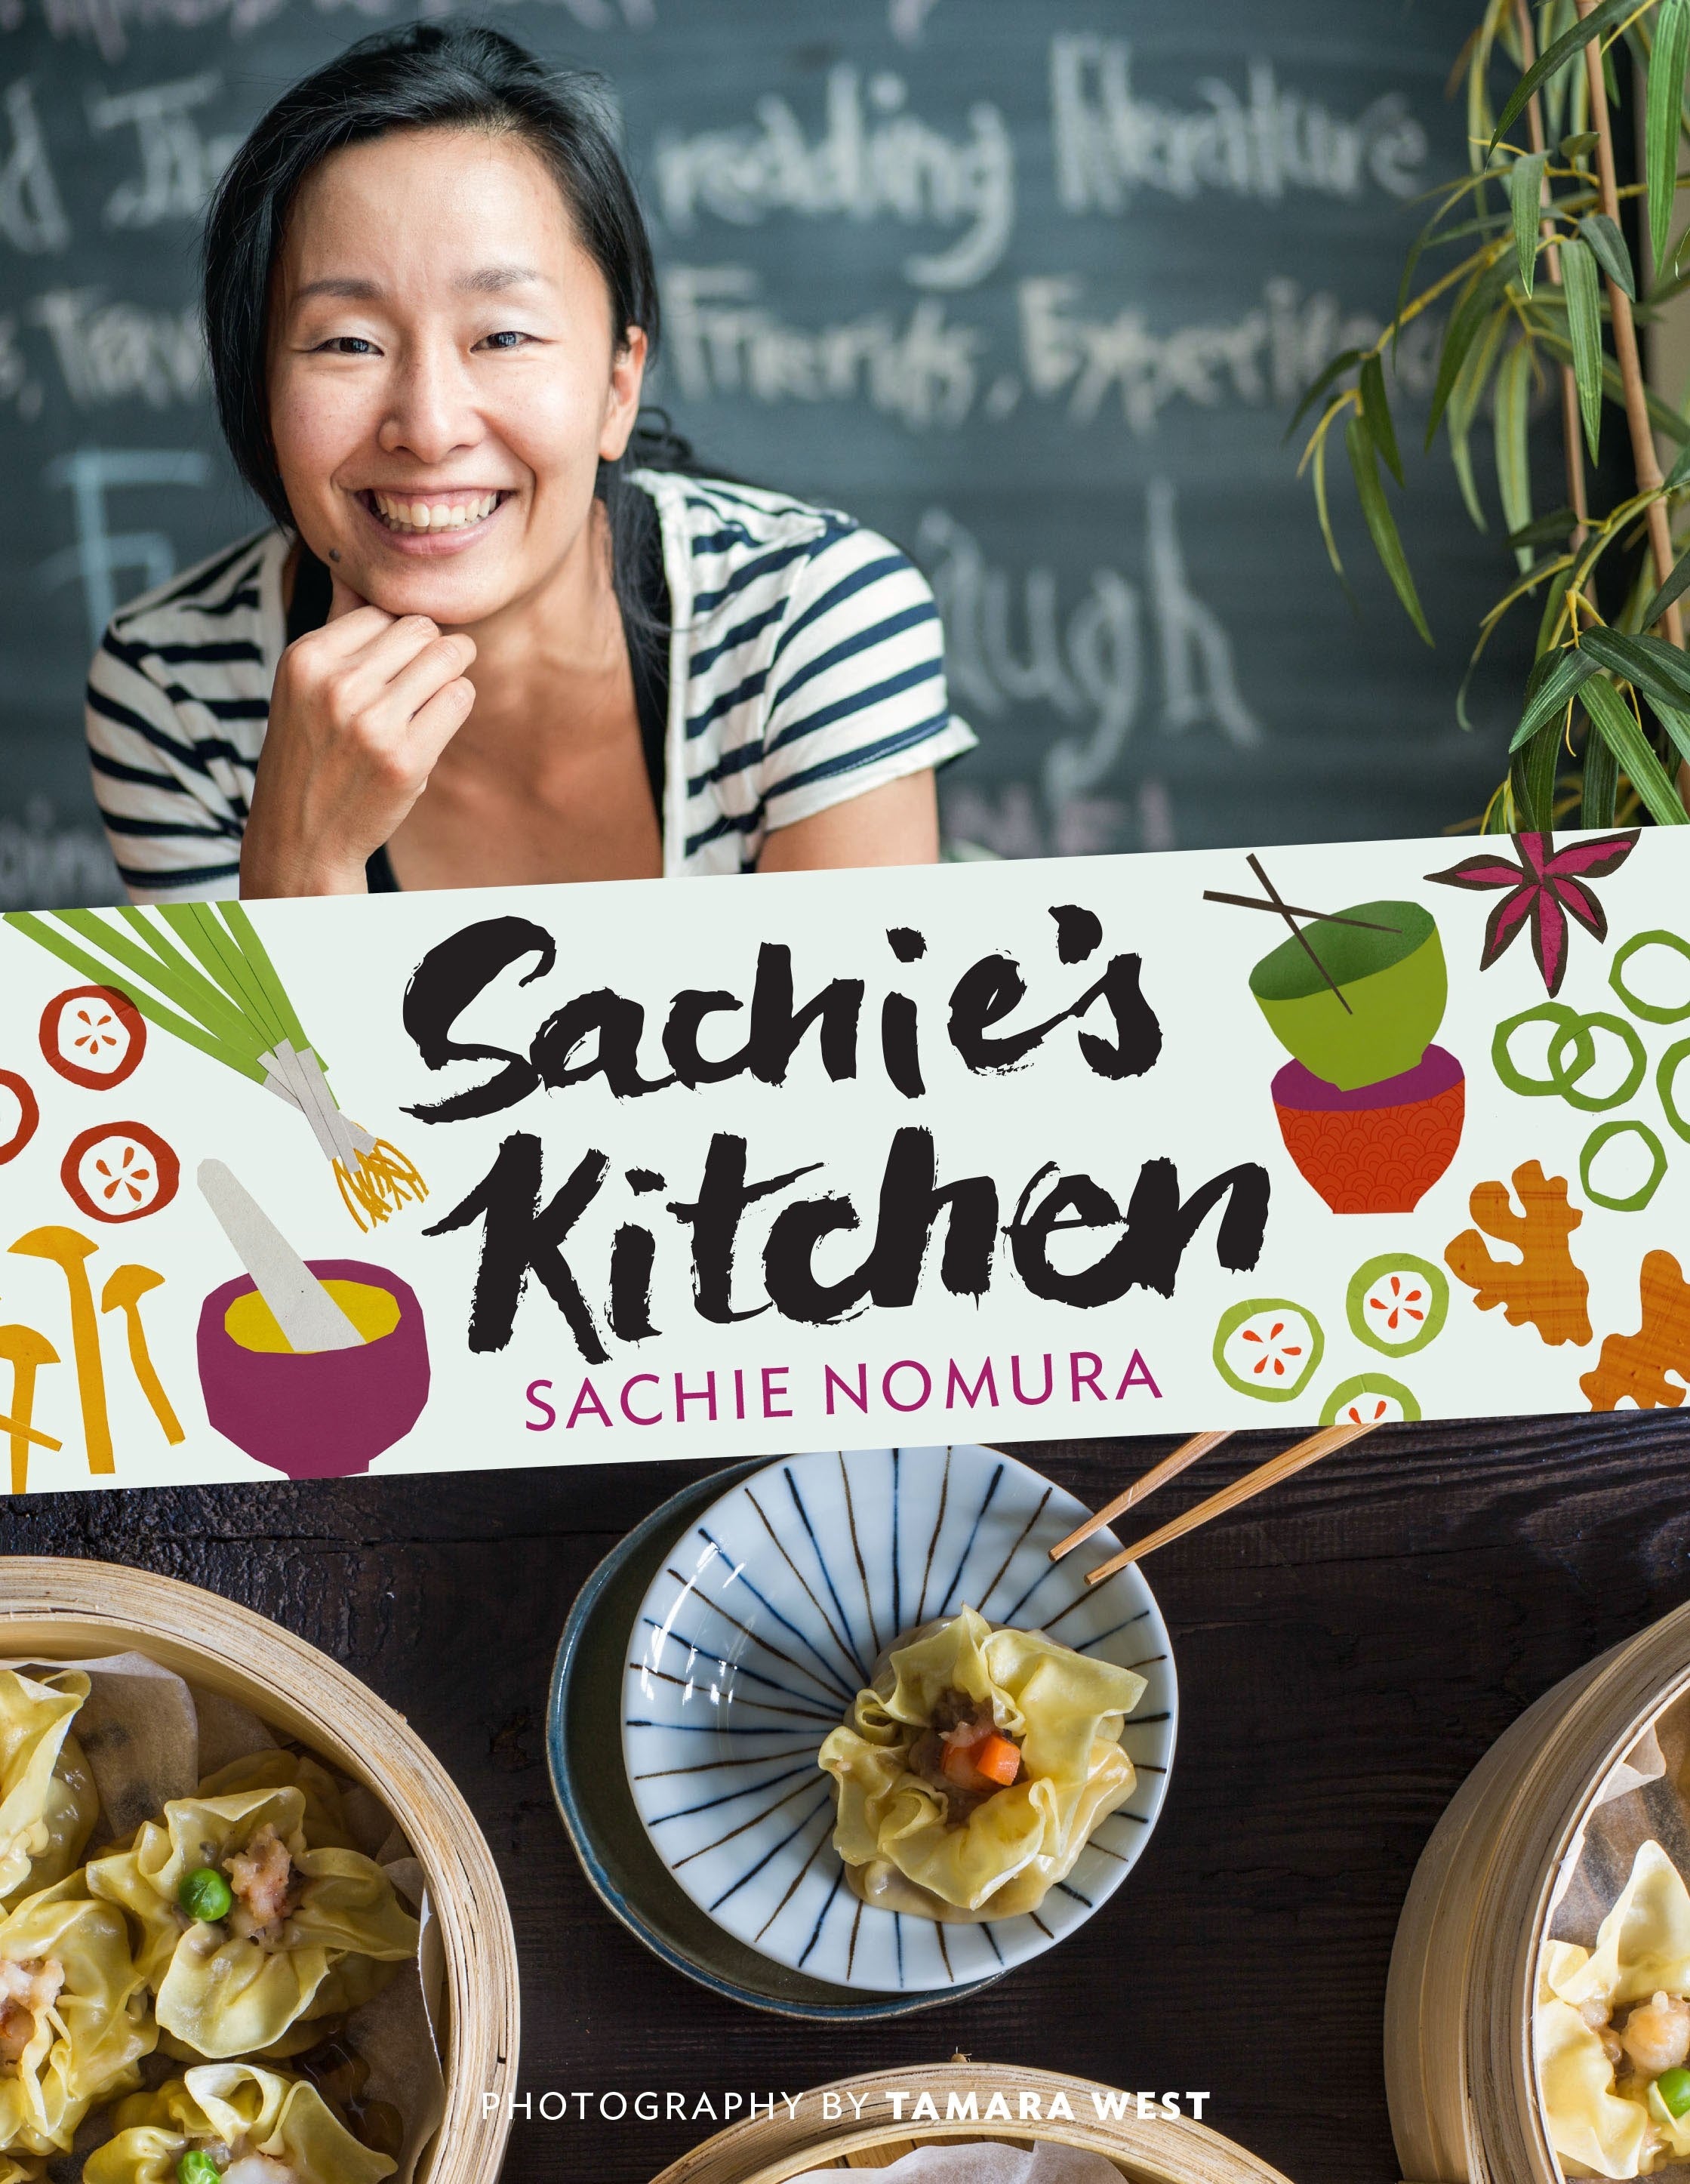 Sachie's Kitchen Cook Book